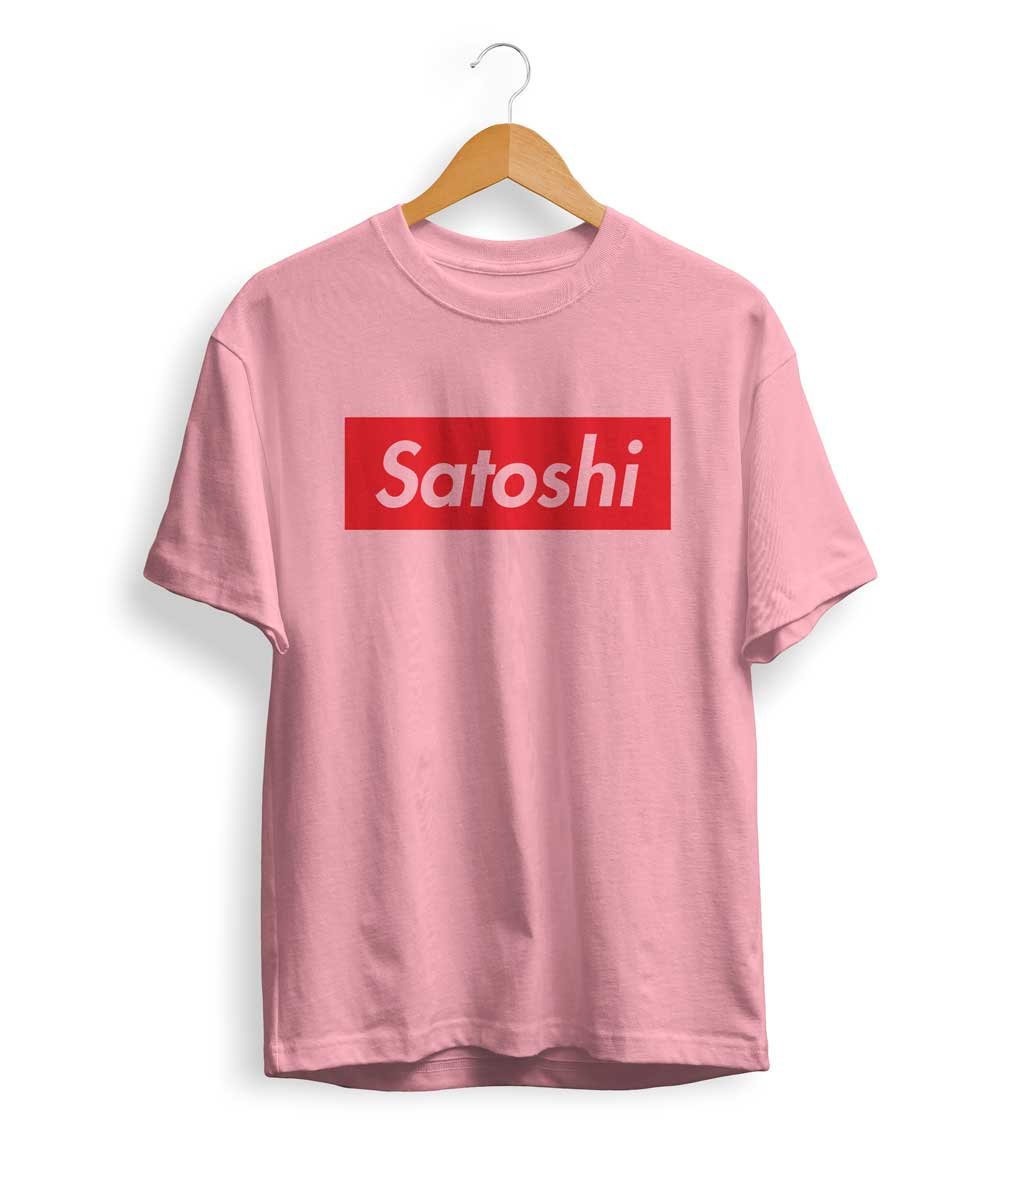 Satoshi T Shirt